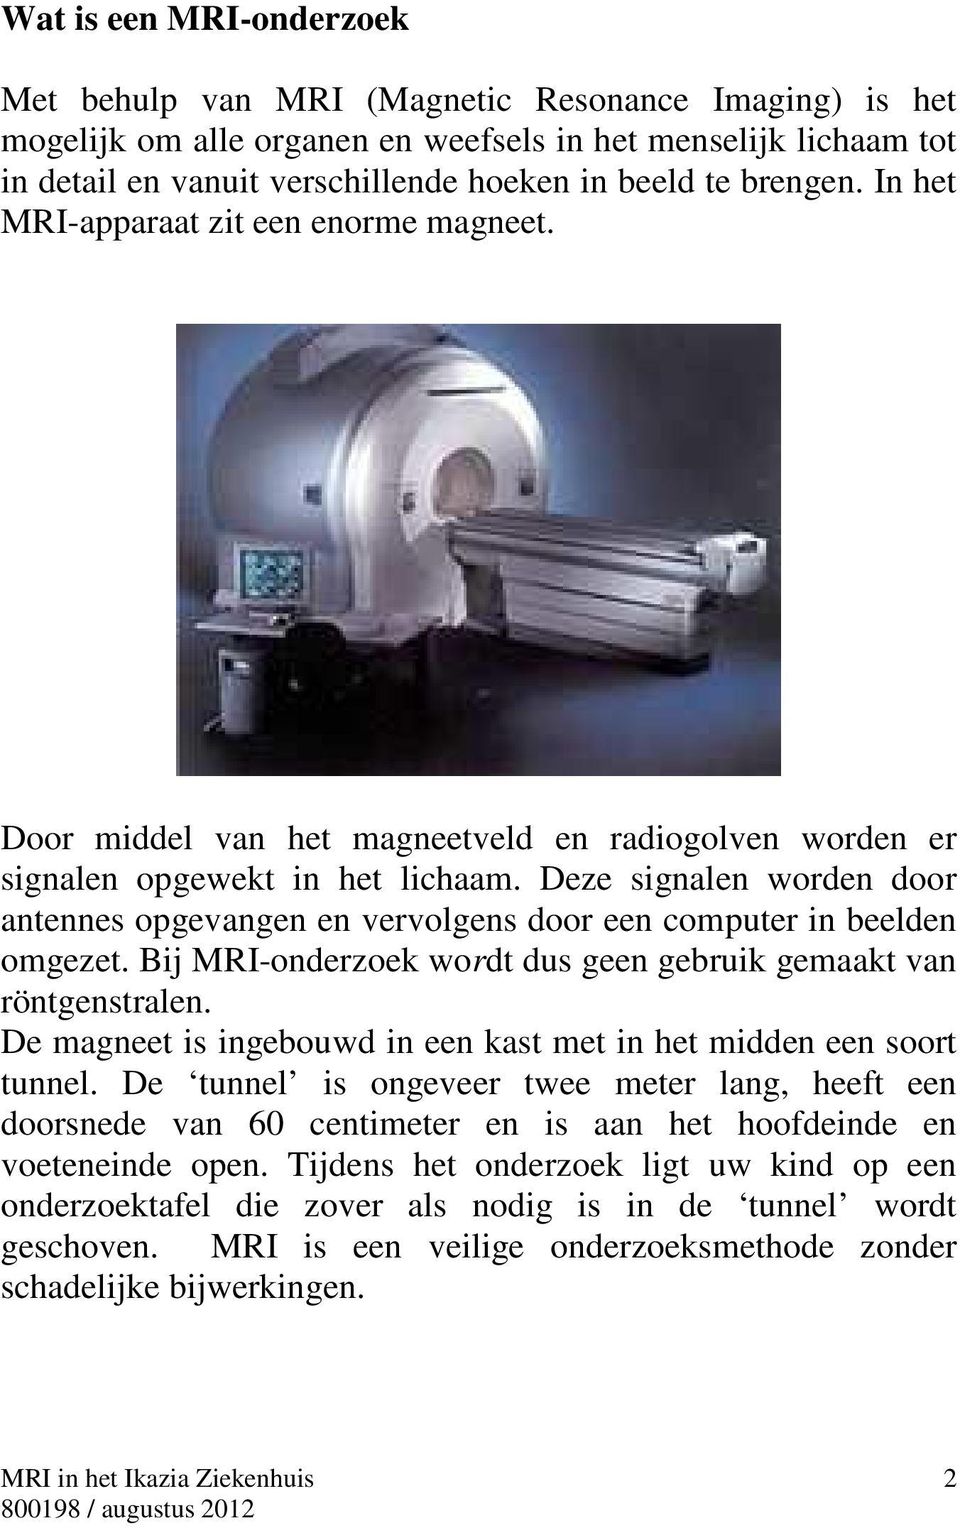 Deze signalen worden door antennes opgevangen en vervolgens door een computer in beelden omgezet. Bij MRI-onderzoek wordt dus geen gebruik gemaakt van röntgenstralen.